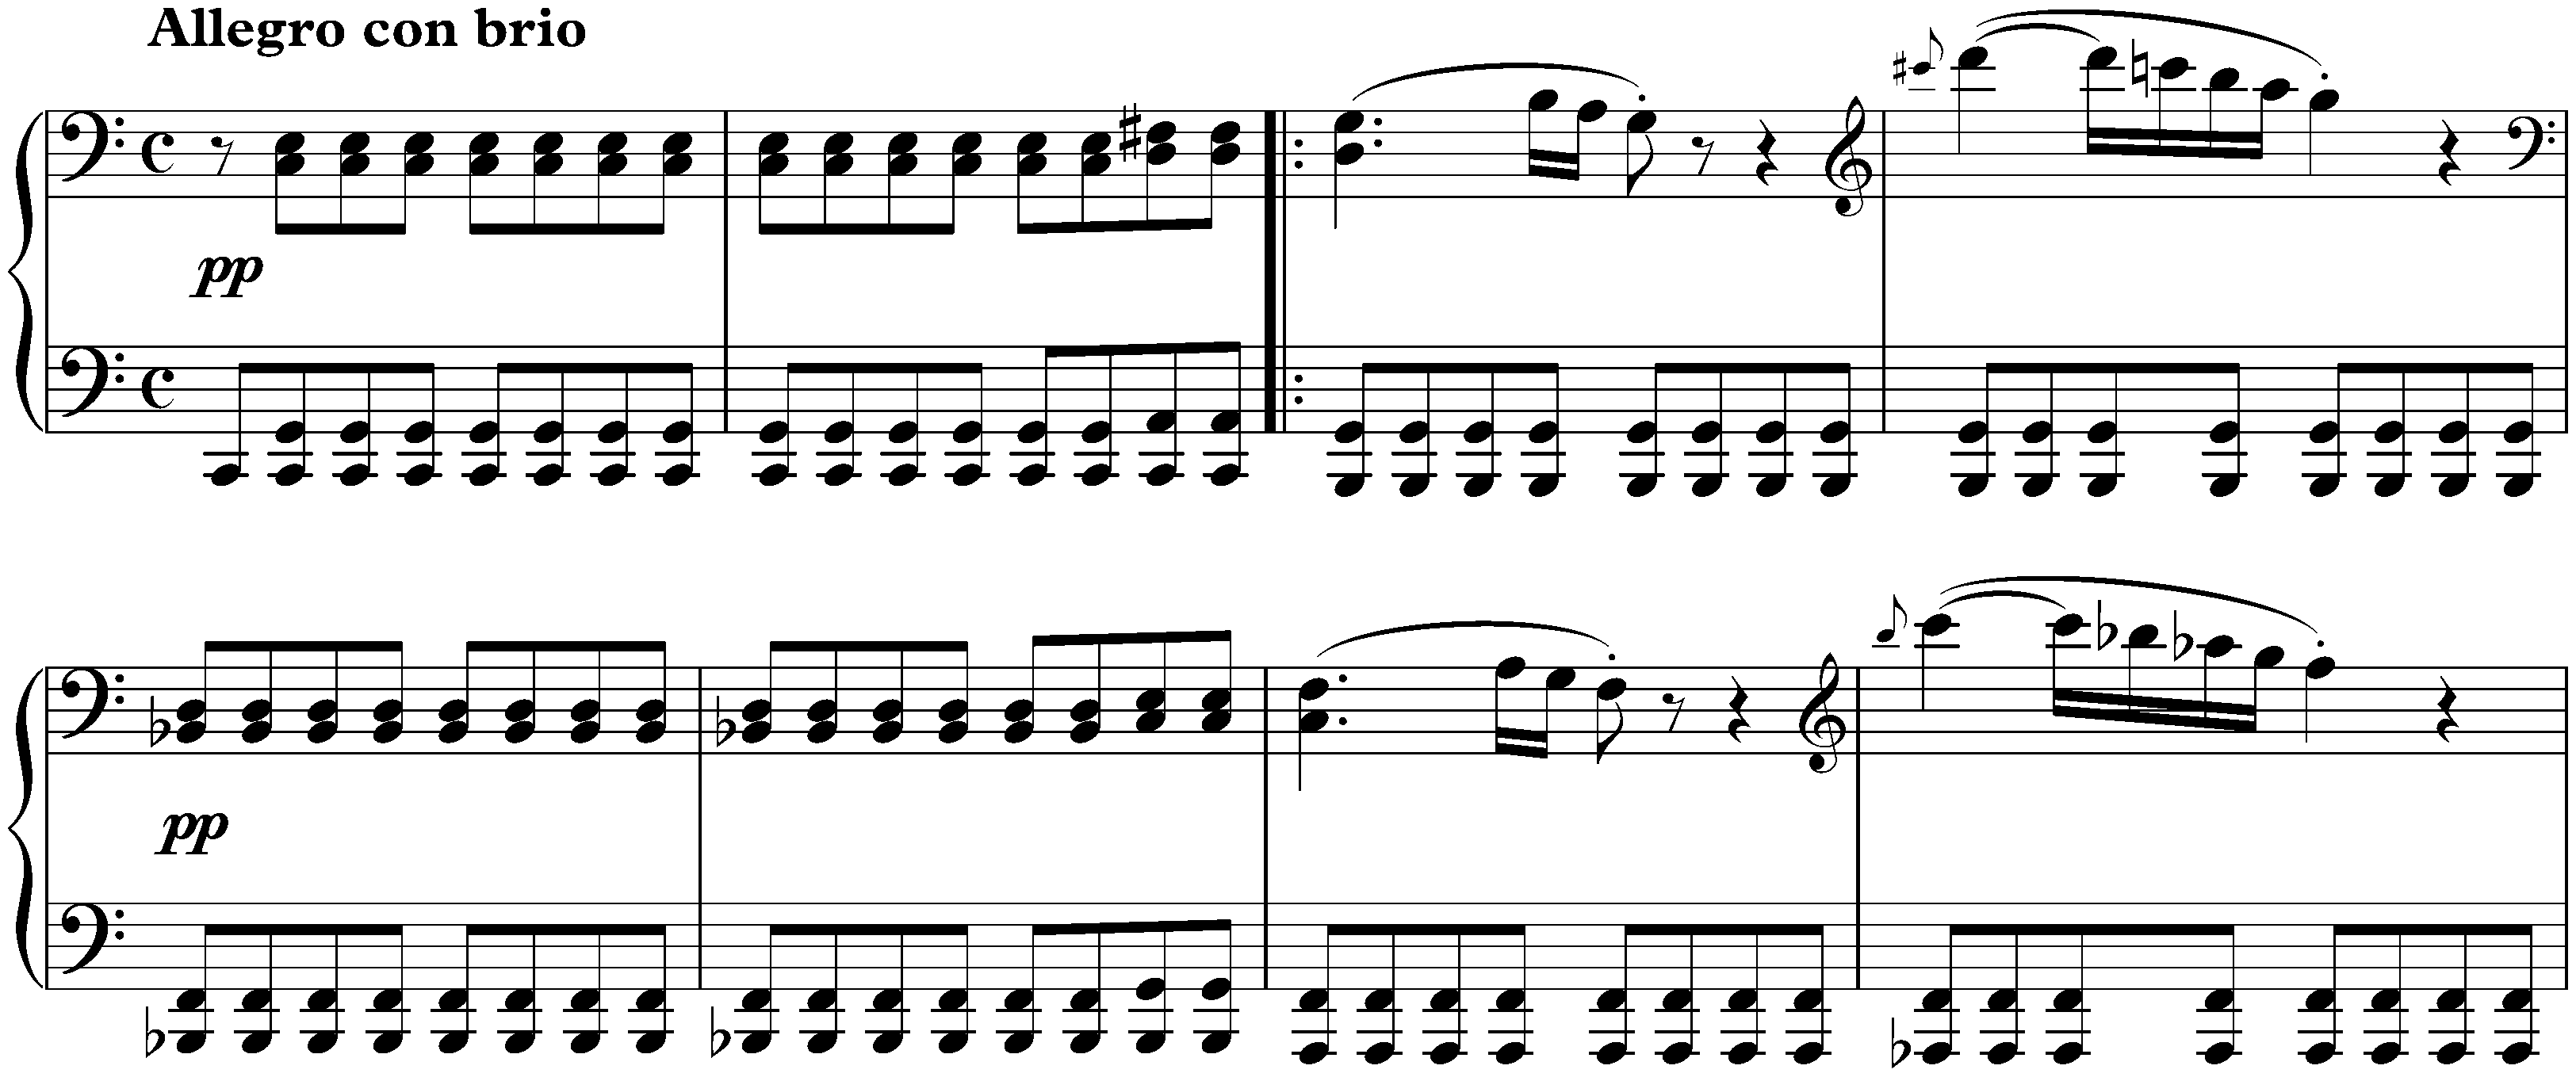 Sonata no. 21 in C major, op. 53 (Waldstein); 1. Allegro con brio